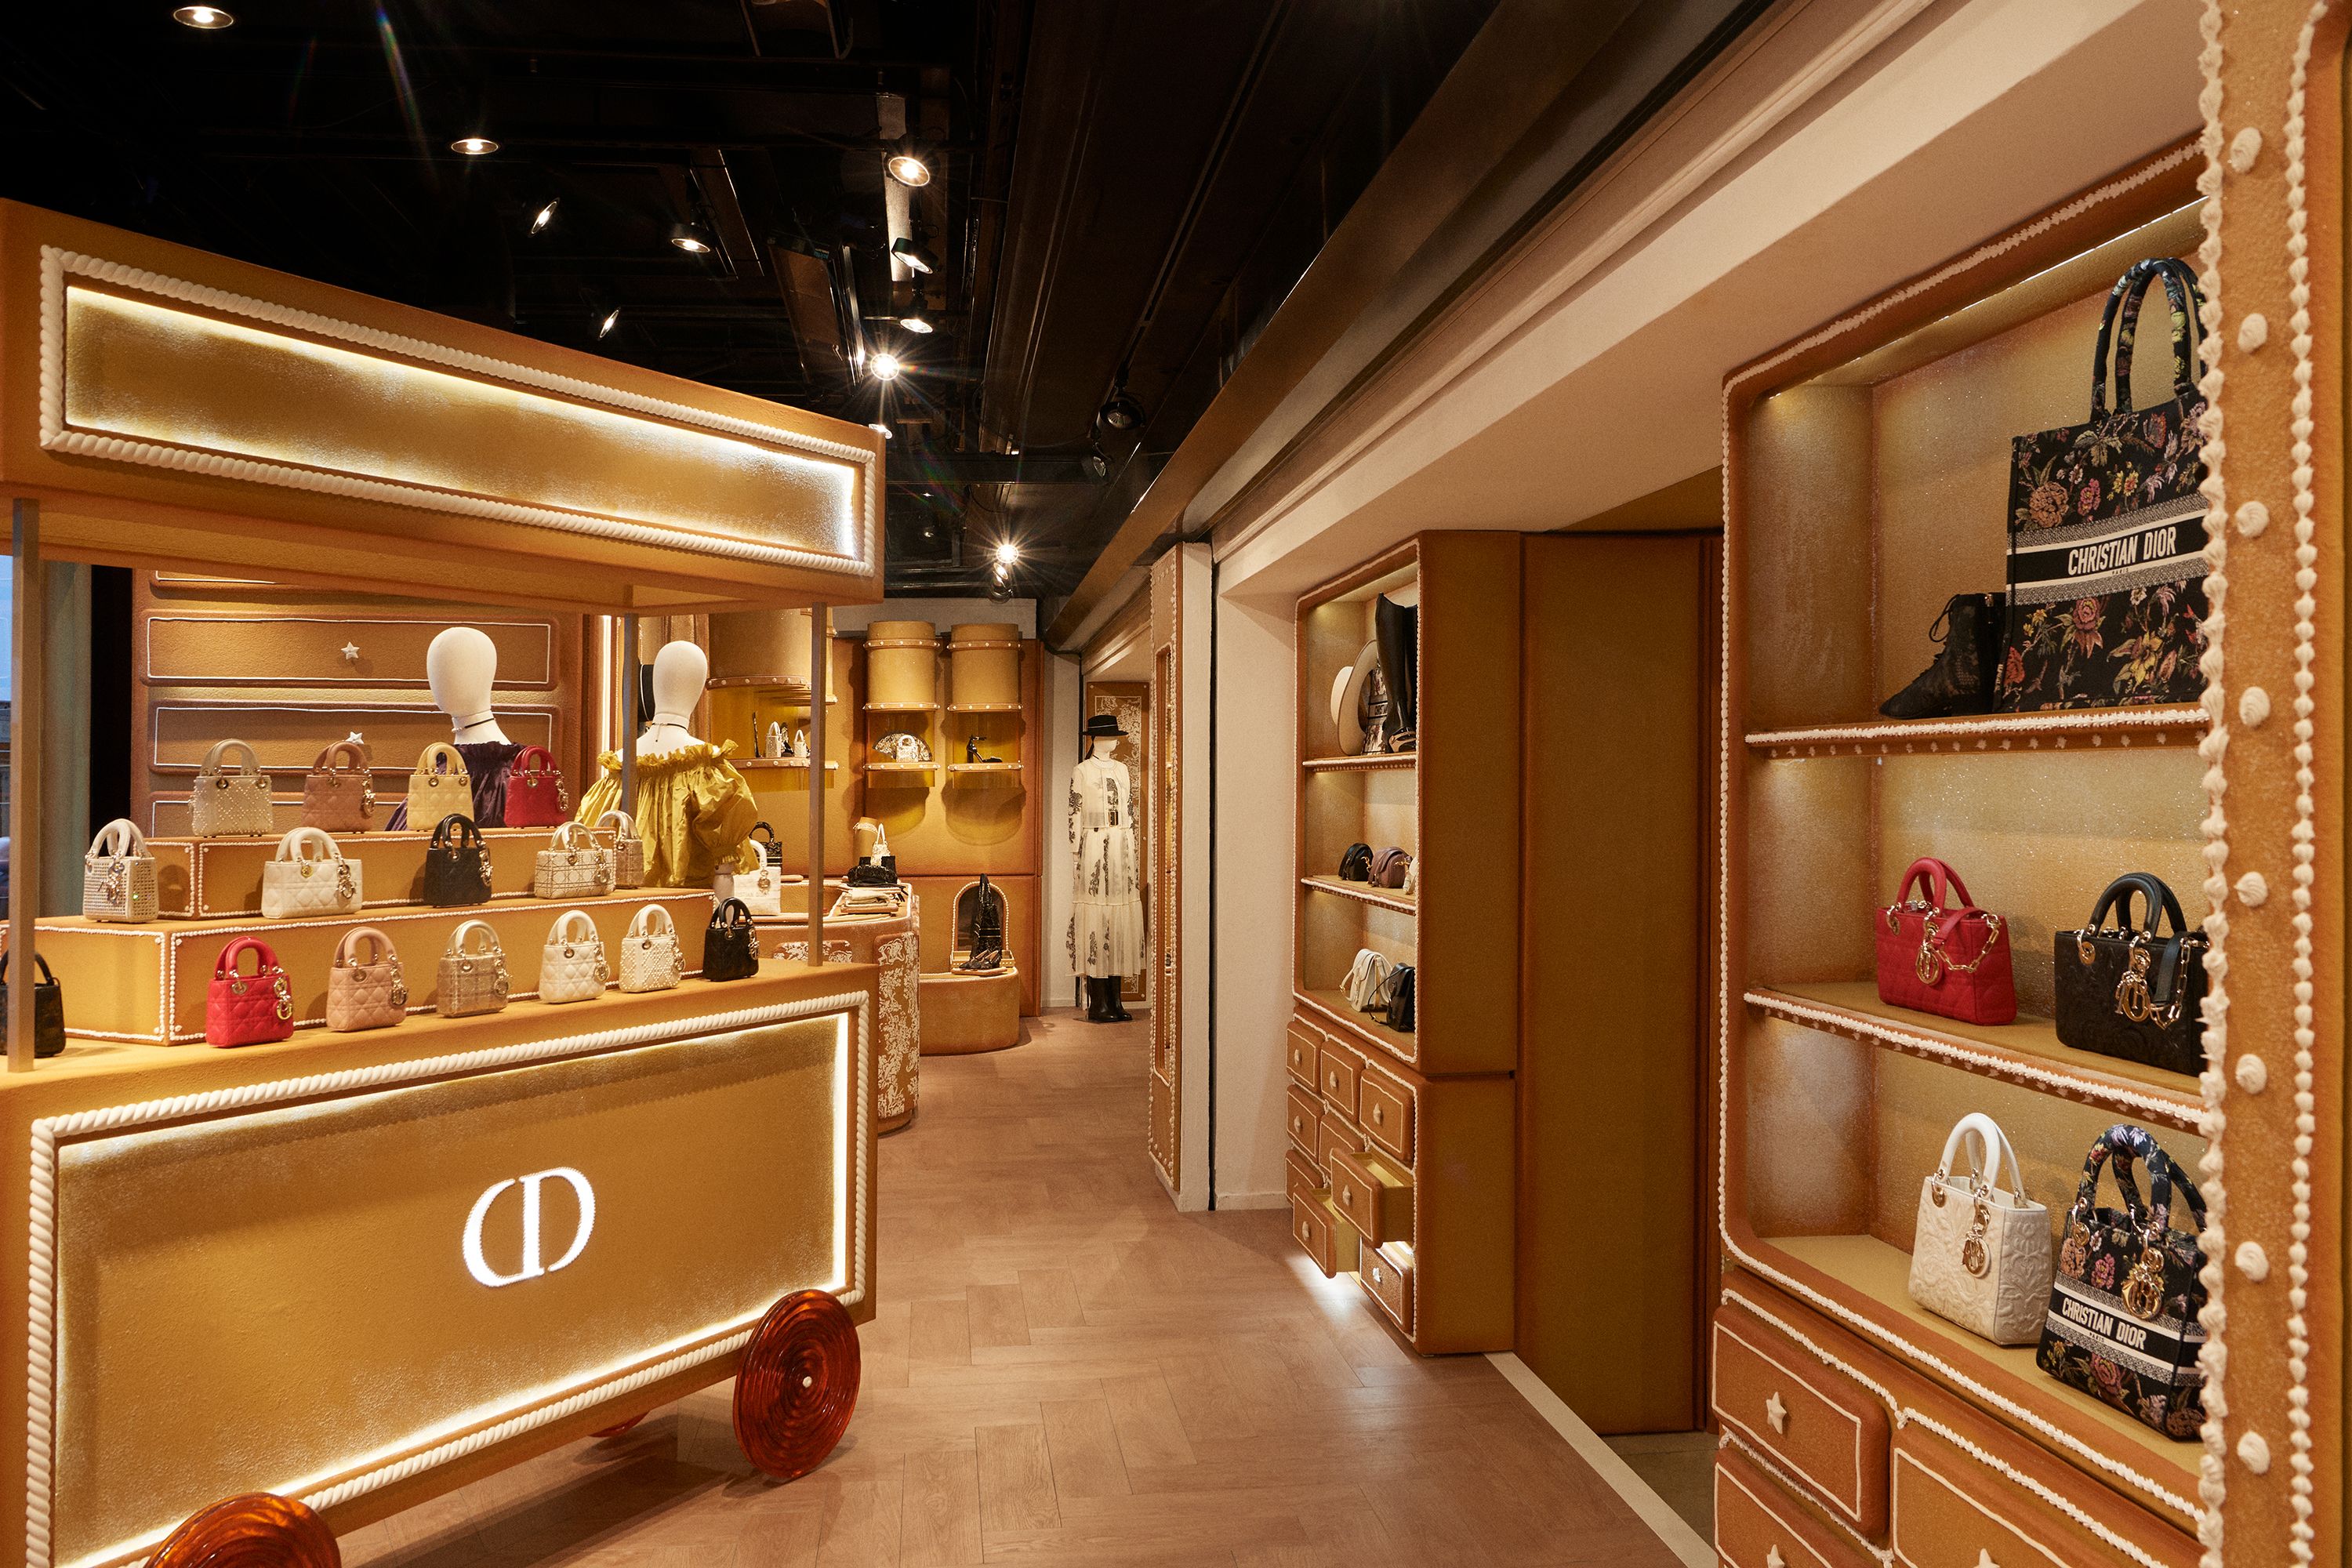 Dior Opens a Summer Shop at Harrods With Mizza Prints a Pop Art Feel